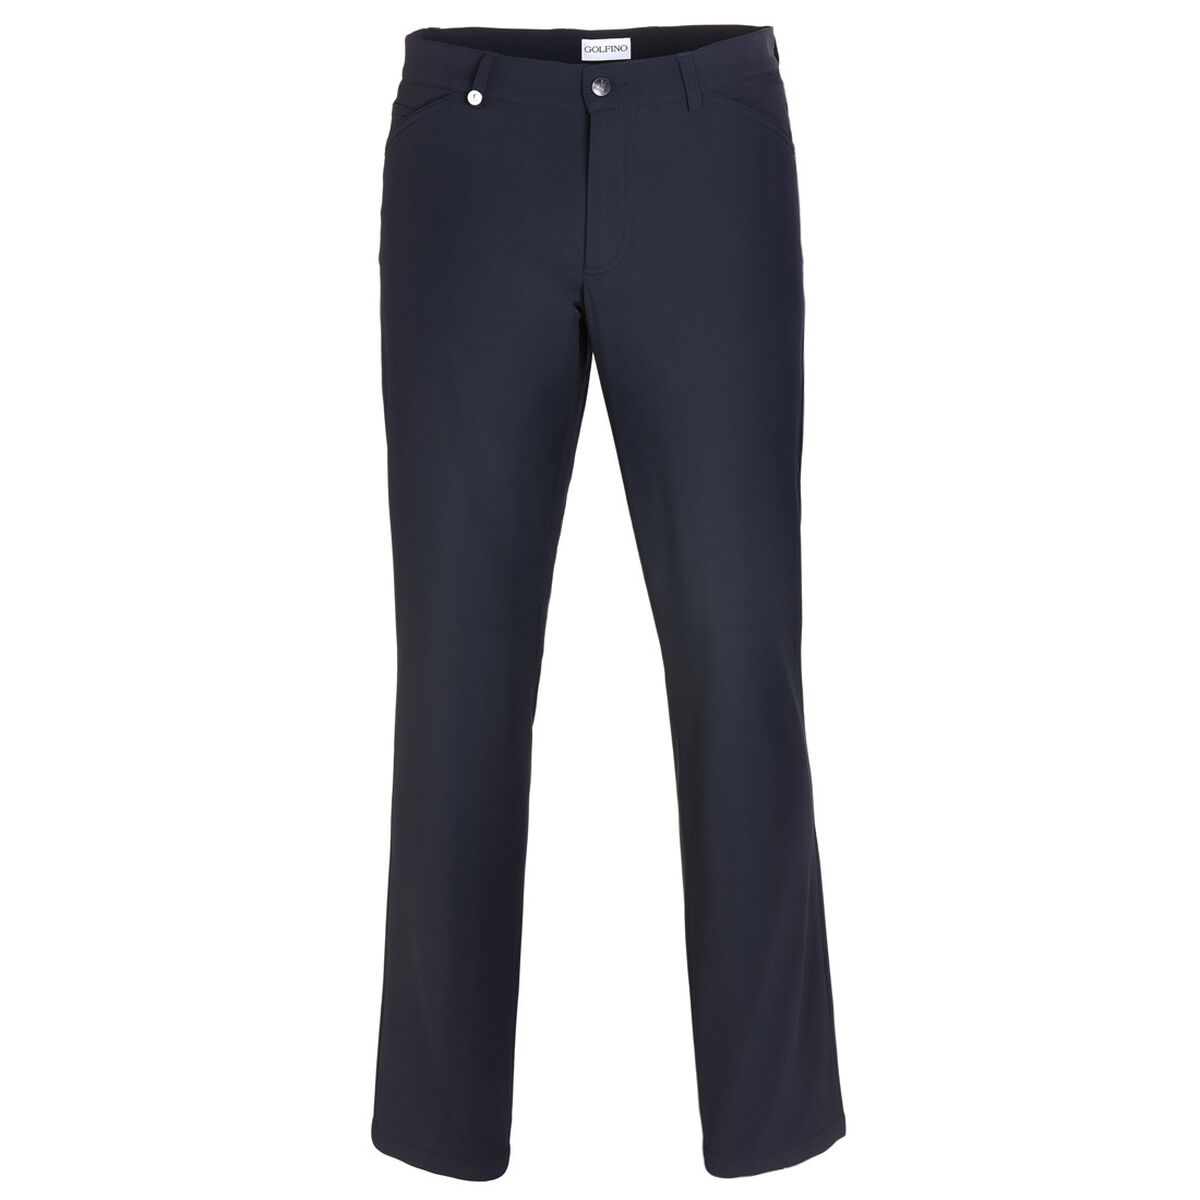 Pantalon GOLFINO 4-Way Stretch Hose, homme, Longue, Bleu, 58 | Online Golf